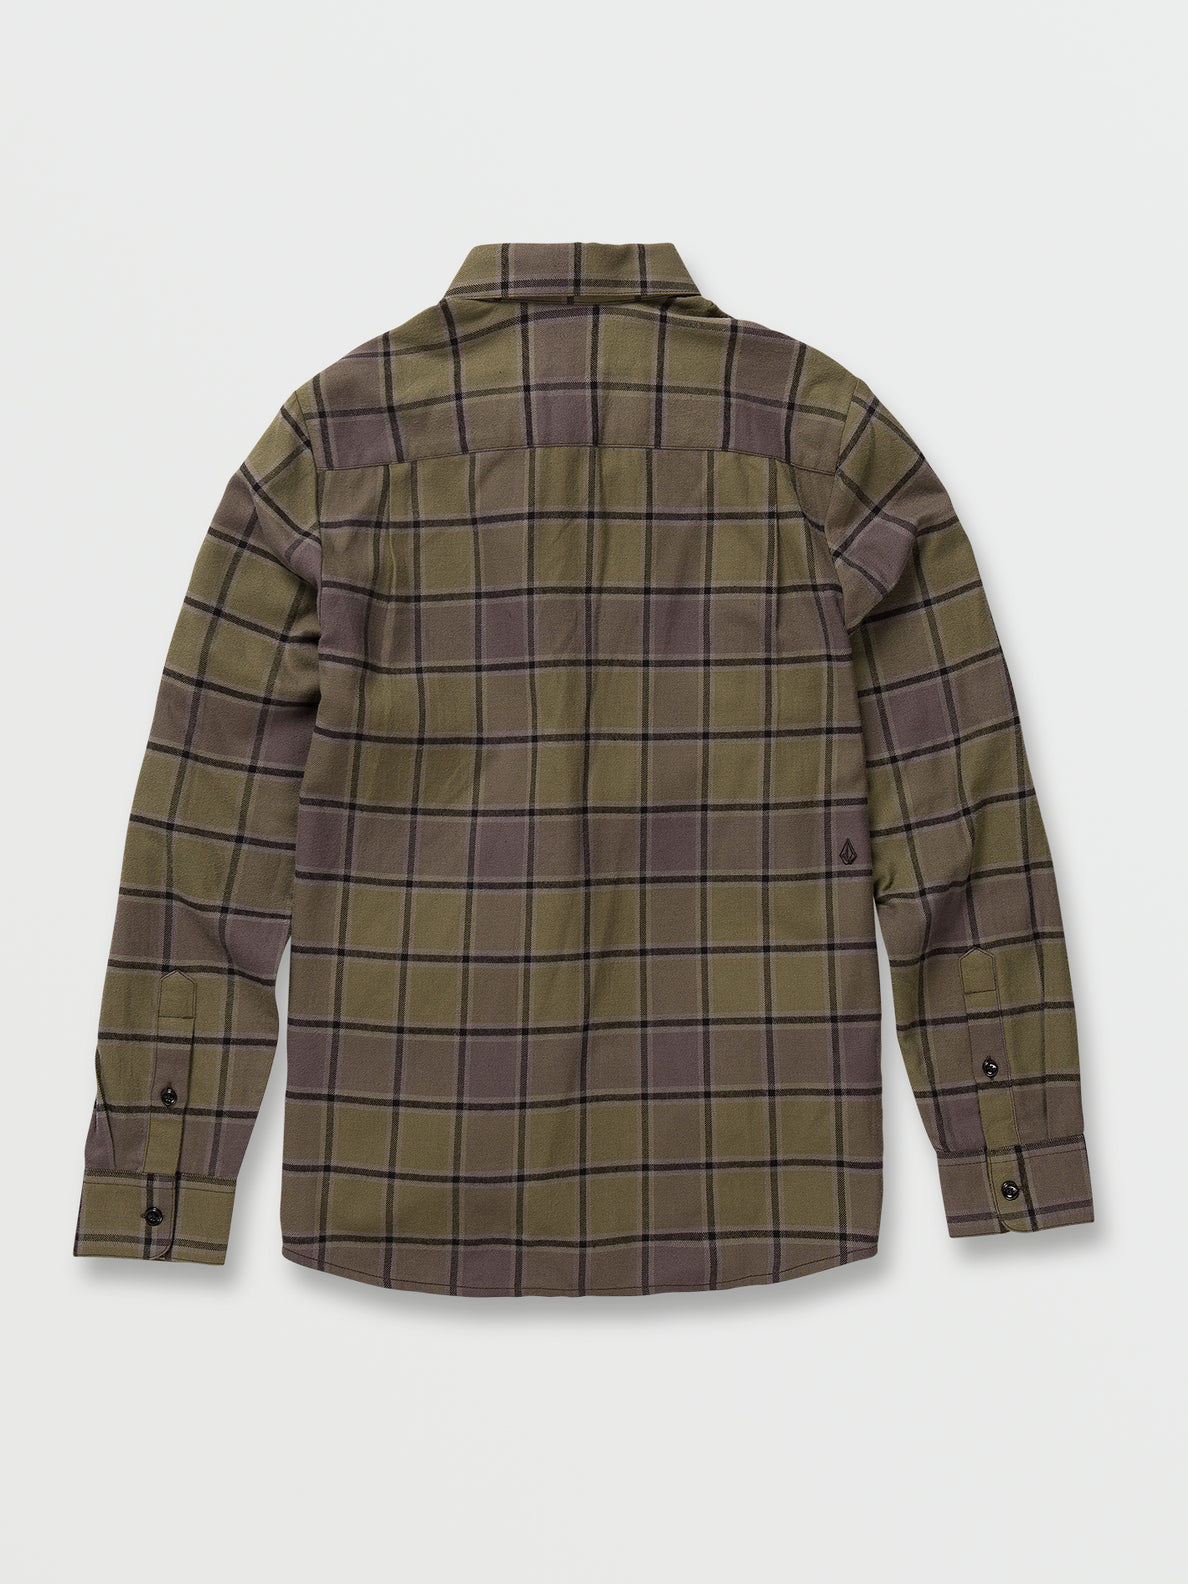 Caden Plaid Long Sleeve Flannel - Military (A0532203_MIL) [B]